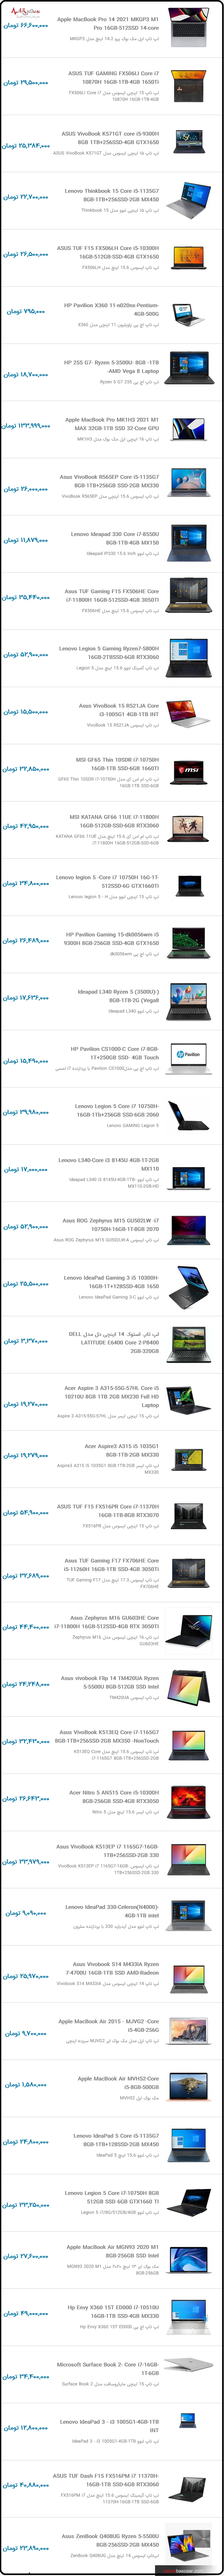 قیمت روز لپ تاپ ایسوس و لنوو امروز در بازار تهران ۱۷ دی ۱۴۰۰